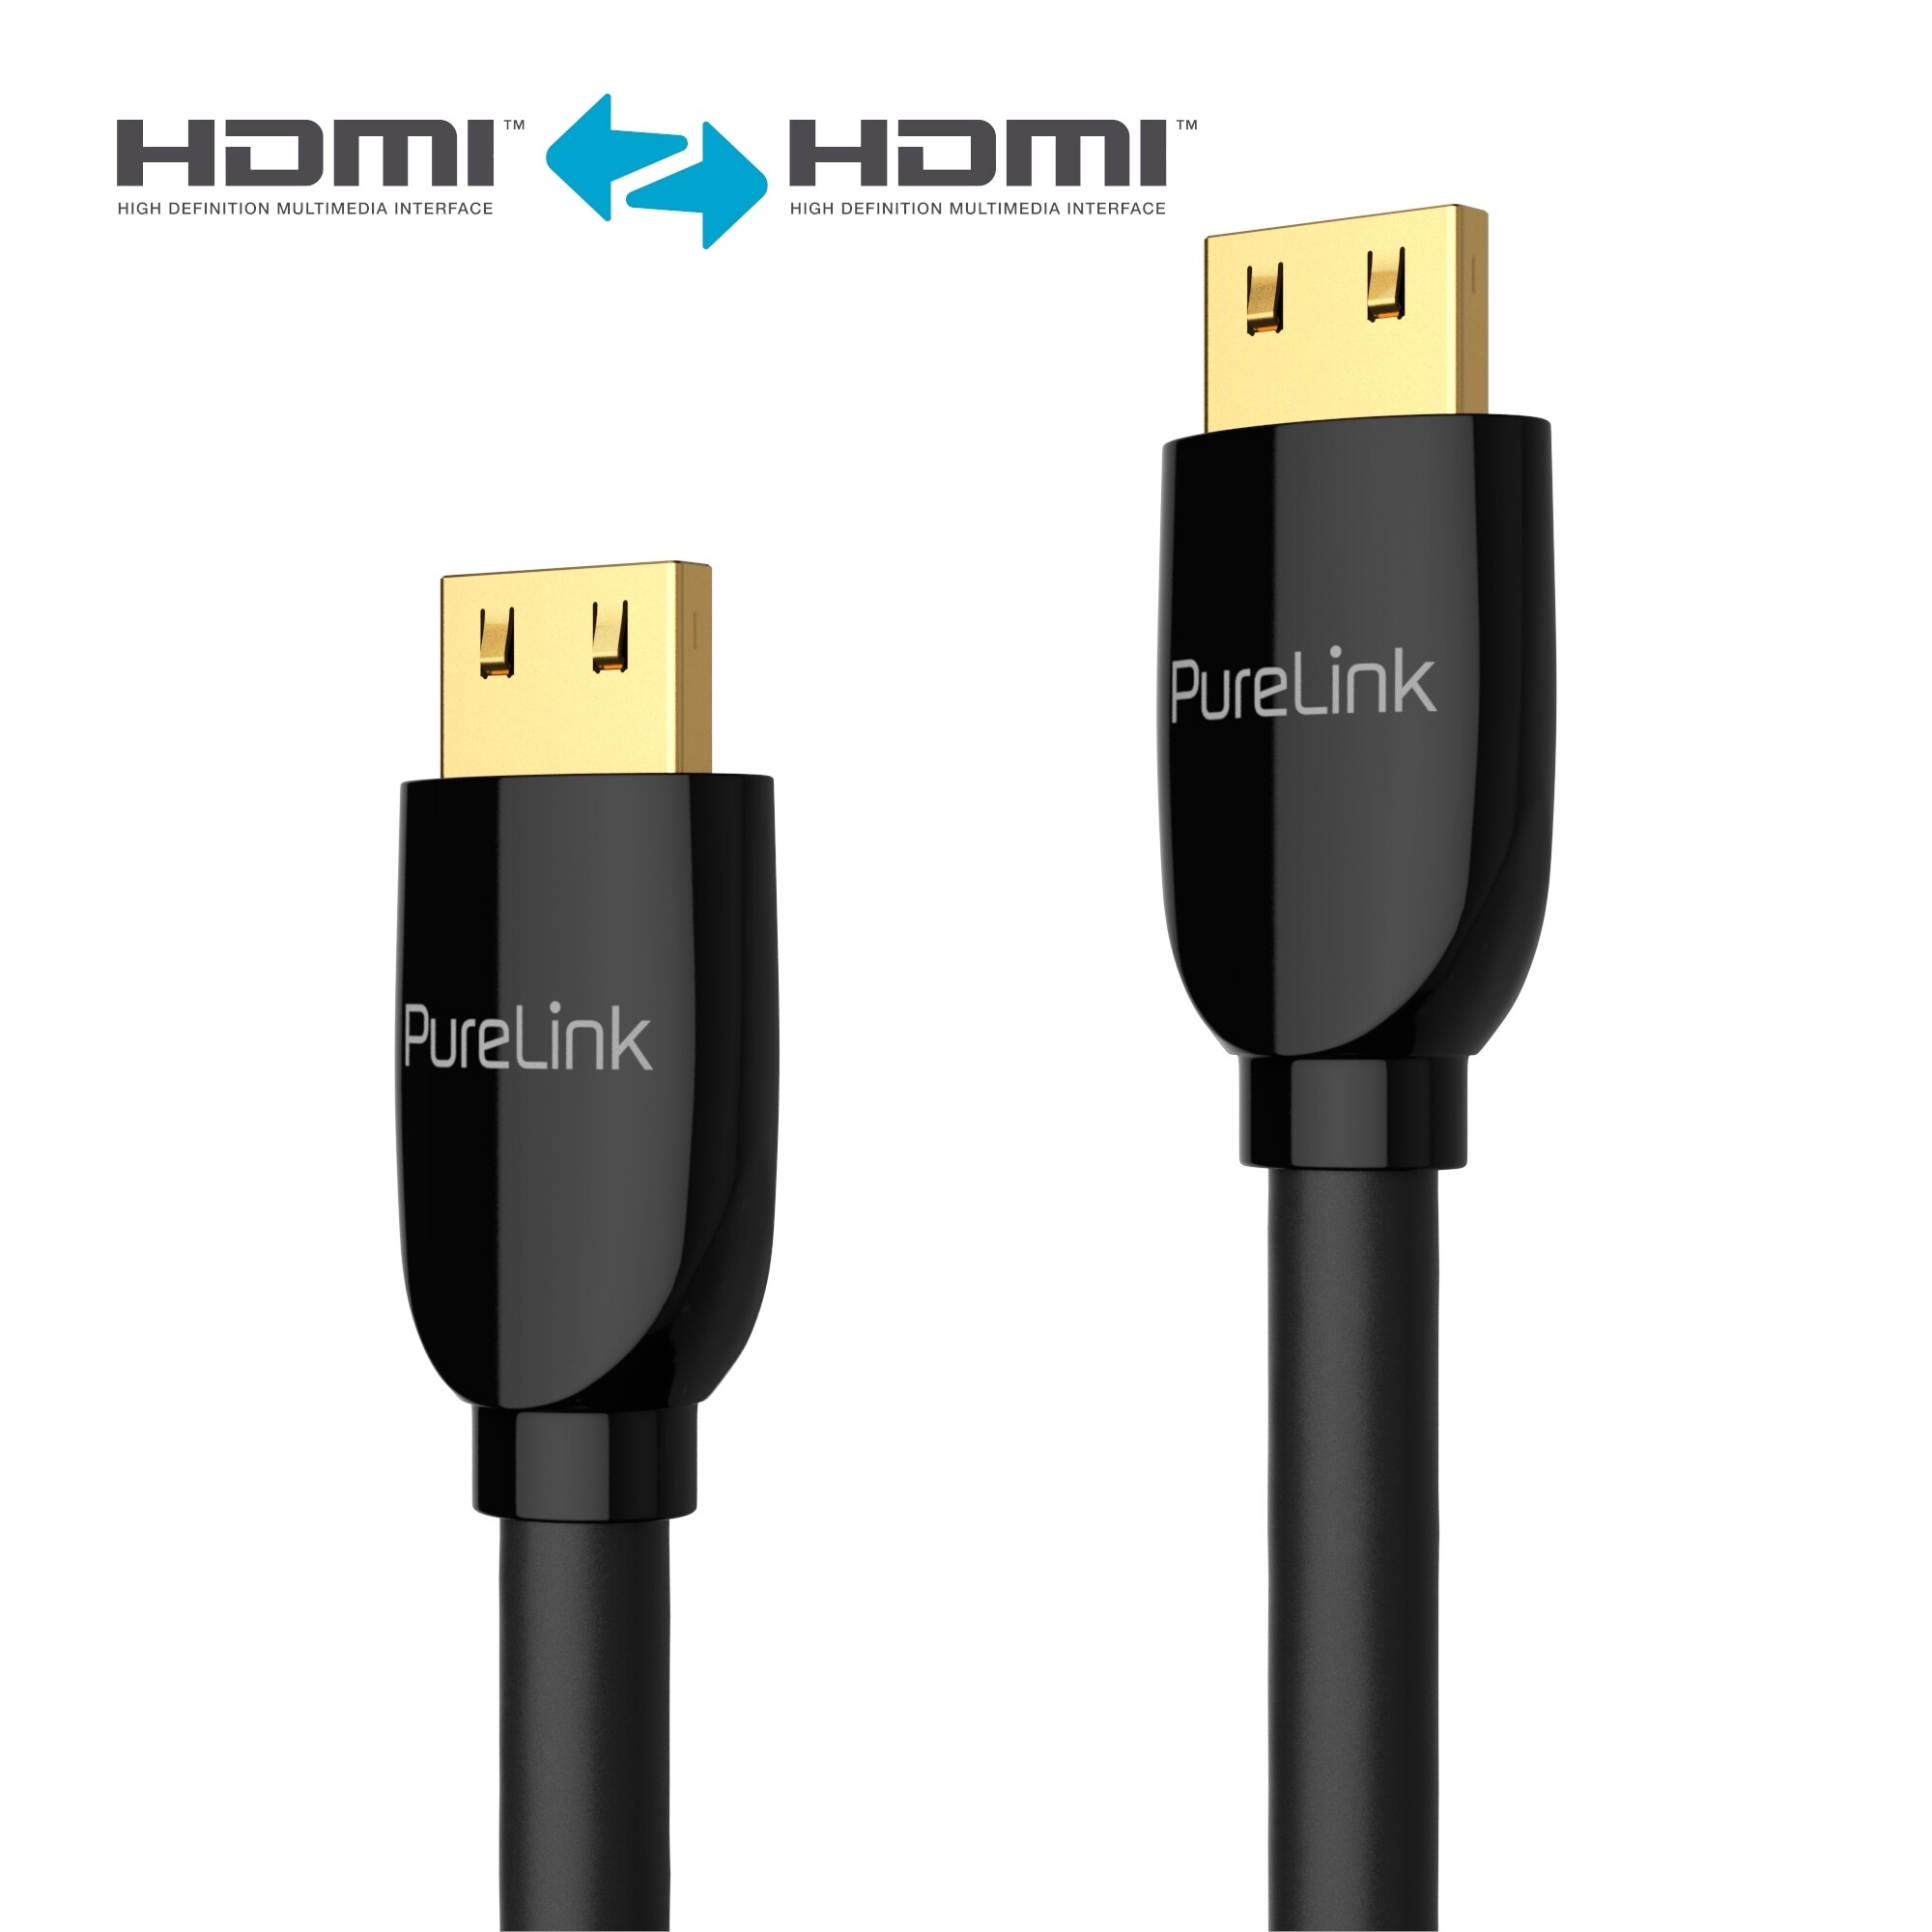 PureLink-PS3000-Premium-Highspeed-HDMI-Kabel-mit-Ethernet-Zertifiziert-1-00m